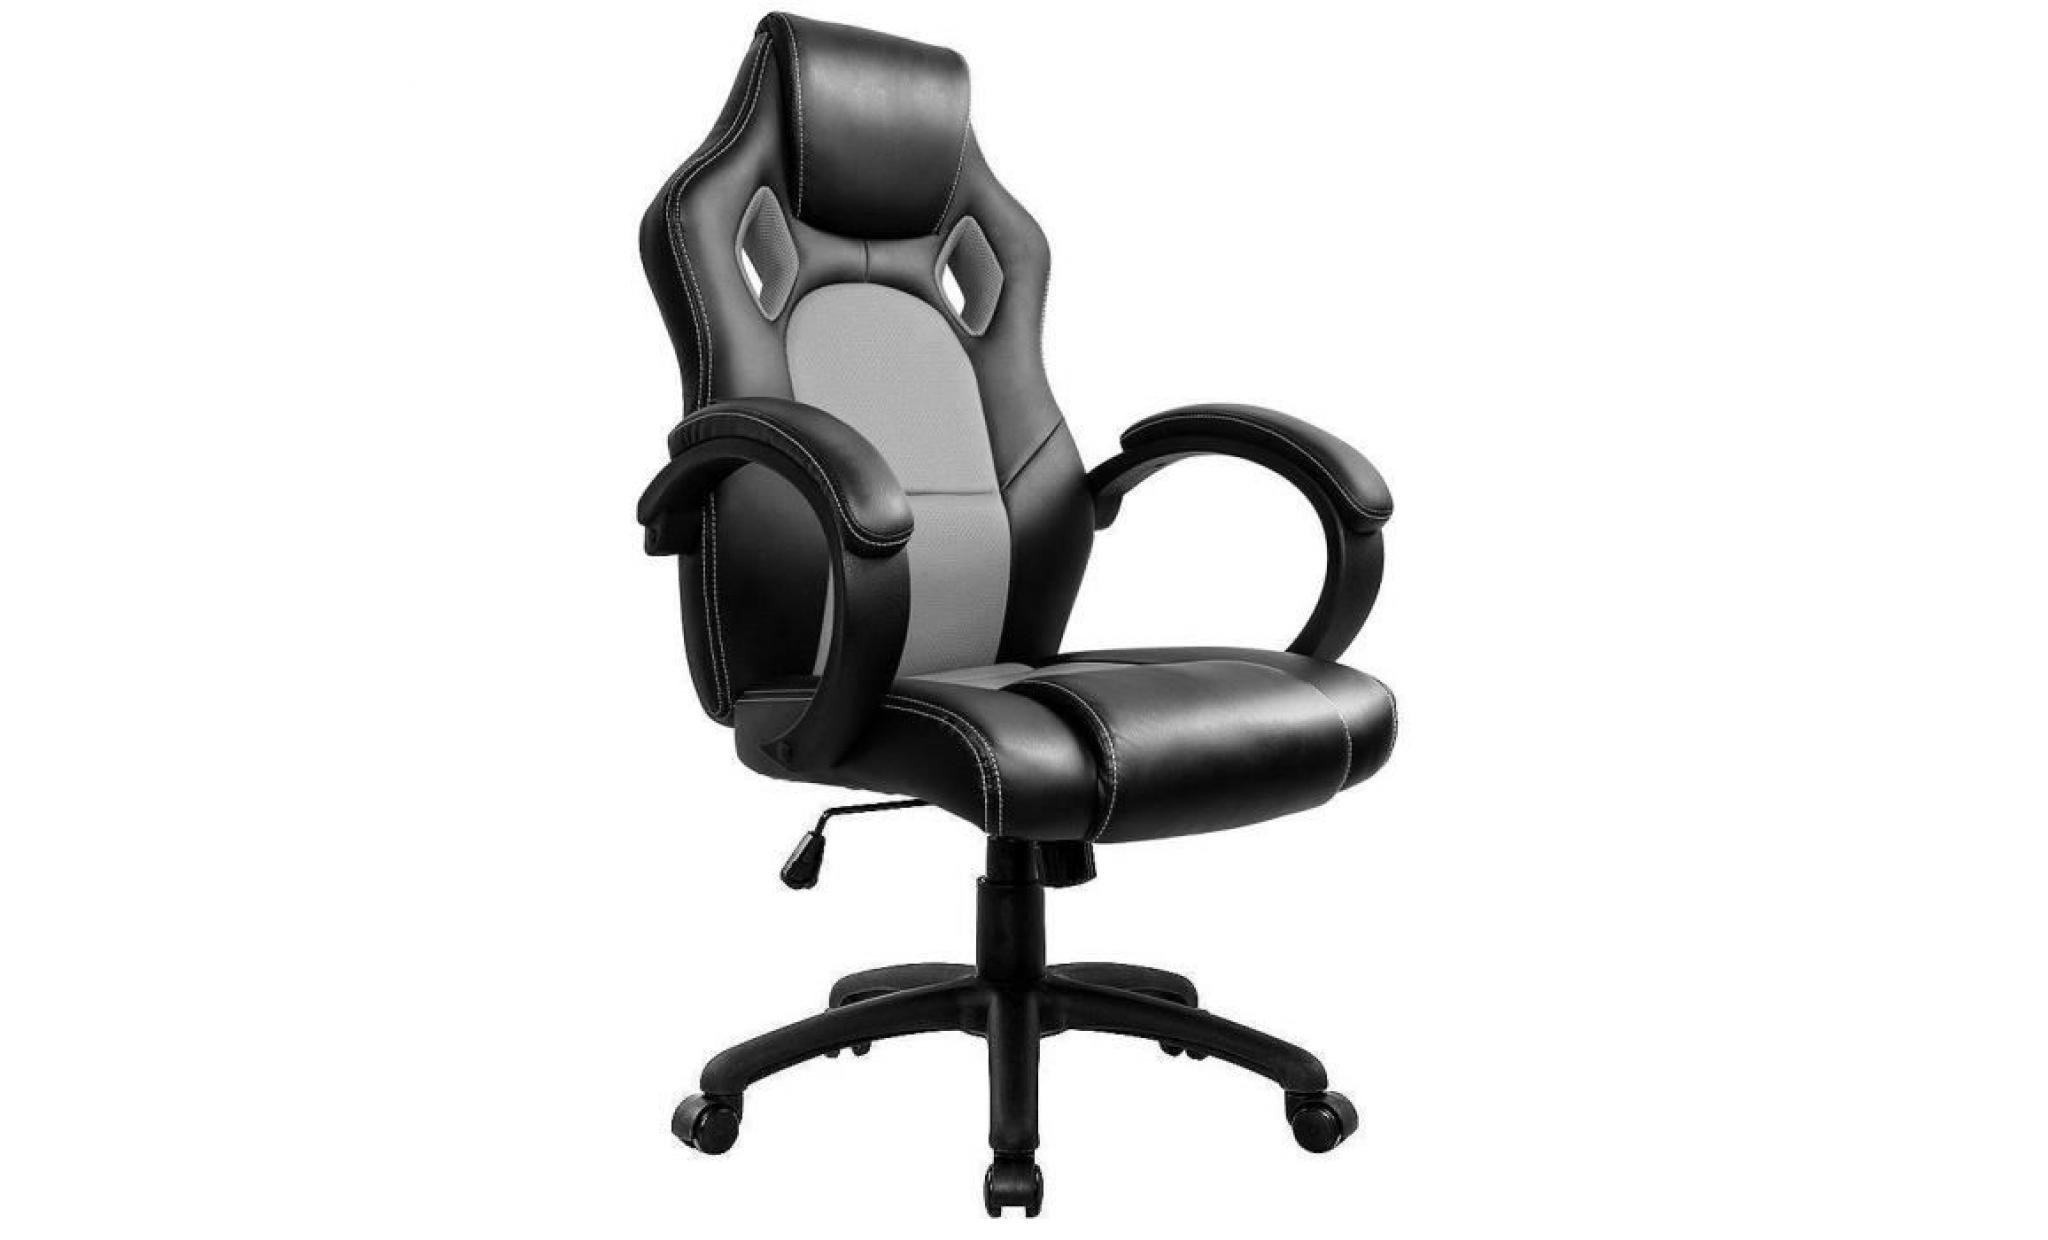 chaise de bureau fauteuil de bureau   moderne confortable ergonomique en similicuir pu   hauteur réglable   bleu   intimate wm heart